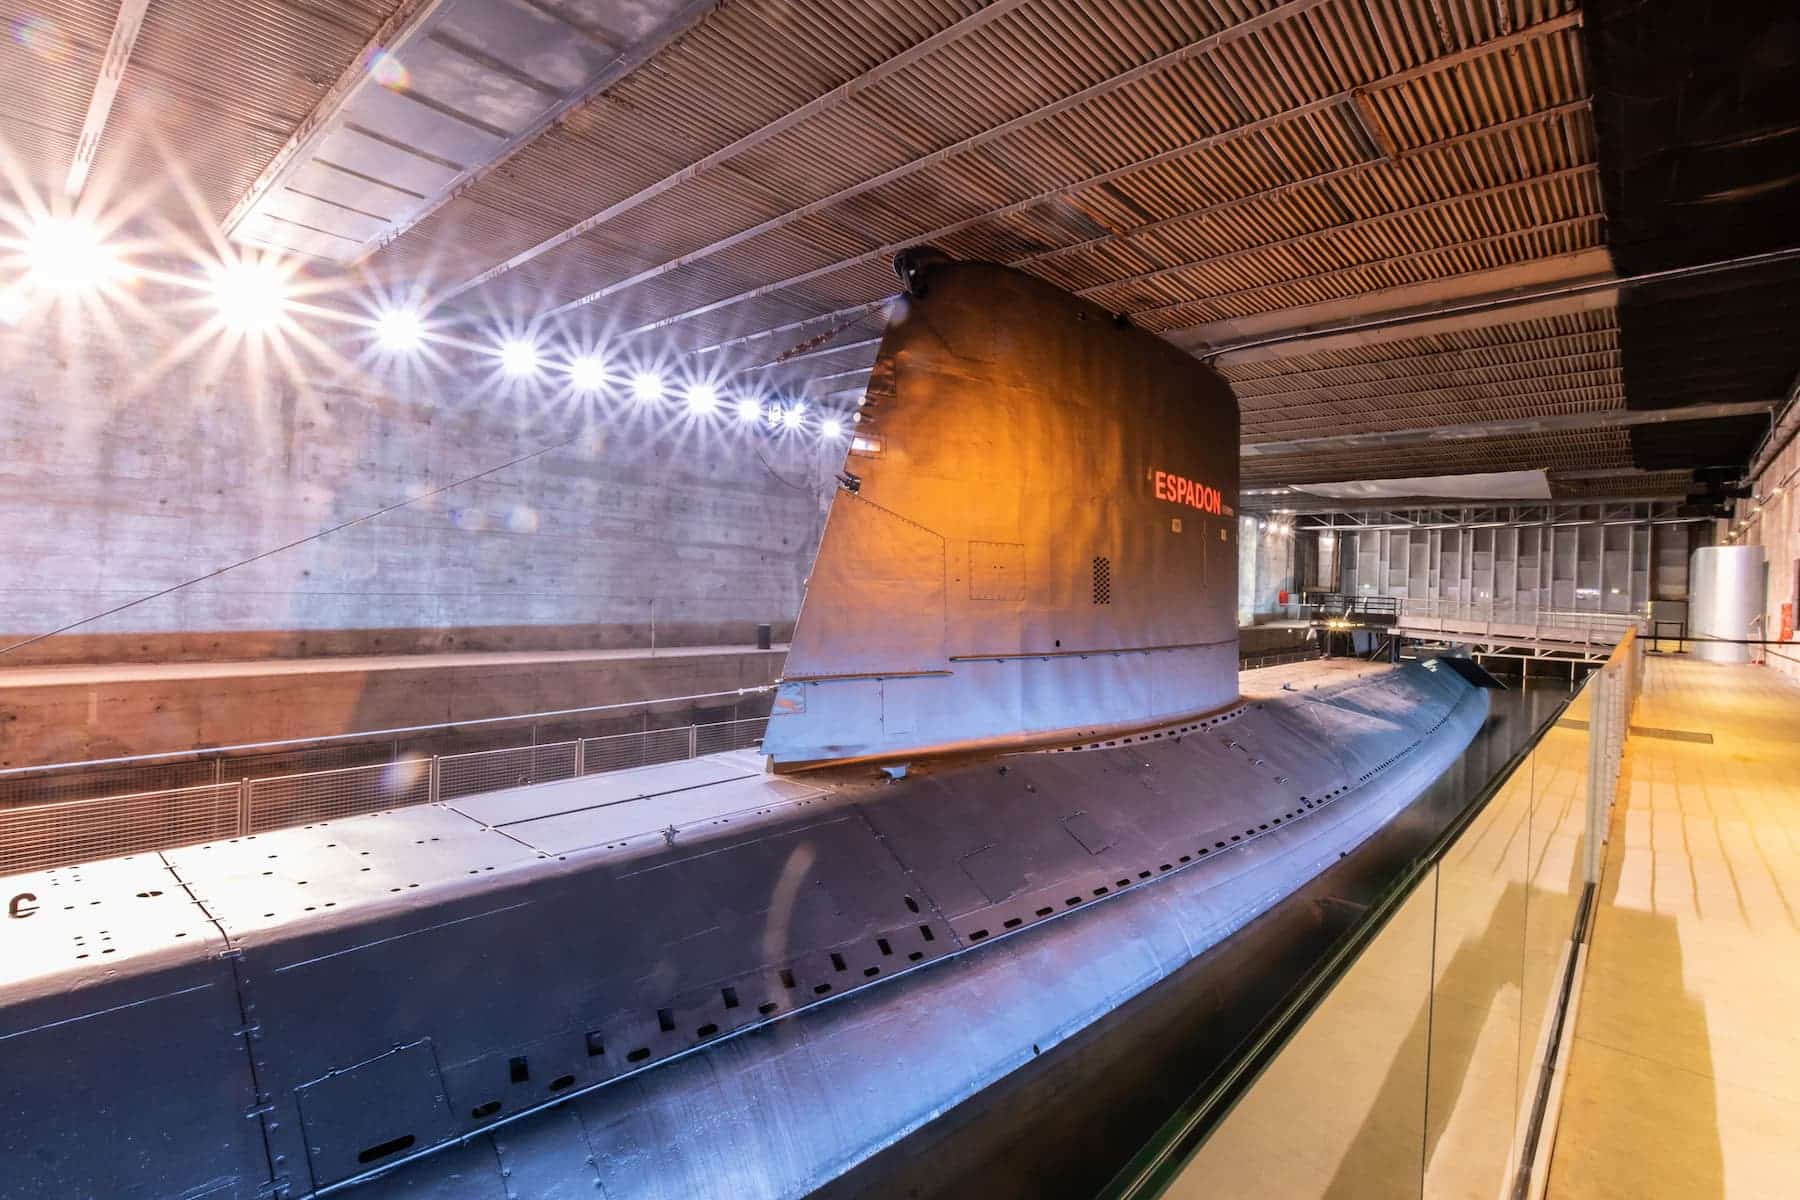 Musée sous-marin Espadon